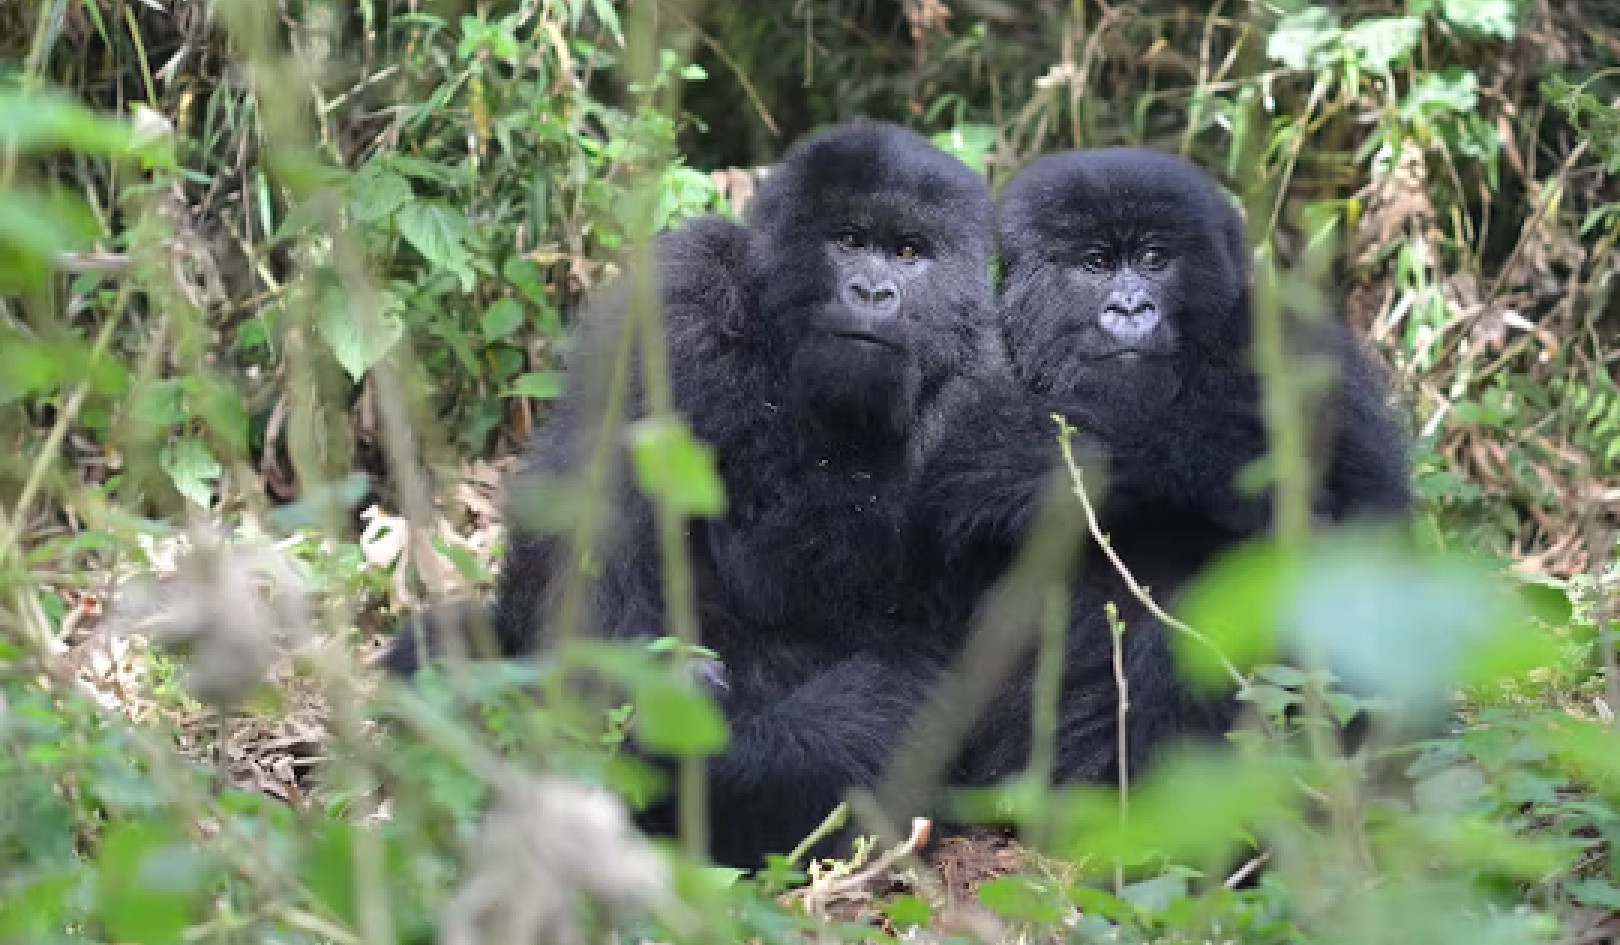 Floreer in die aangesig van teëspoed: Veerkragtige gorillas openbaar leidrade oor die oorkom van kinderongeluk